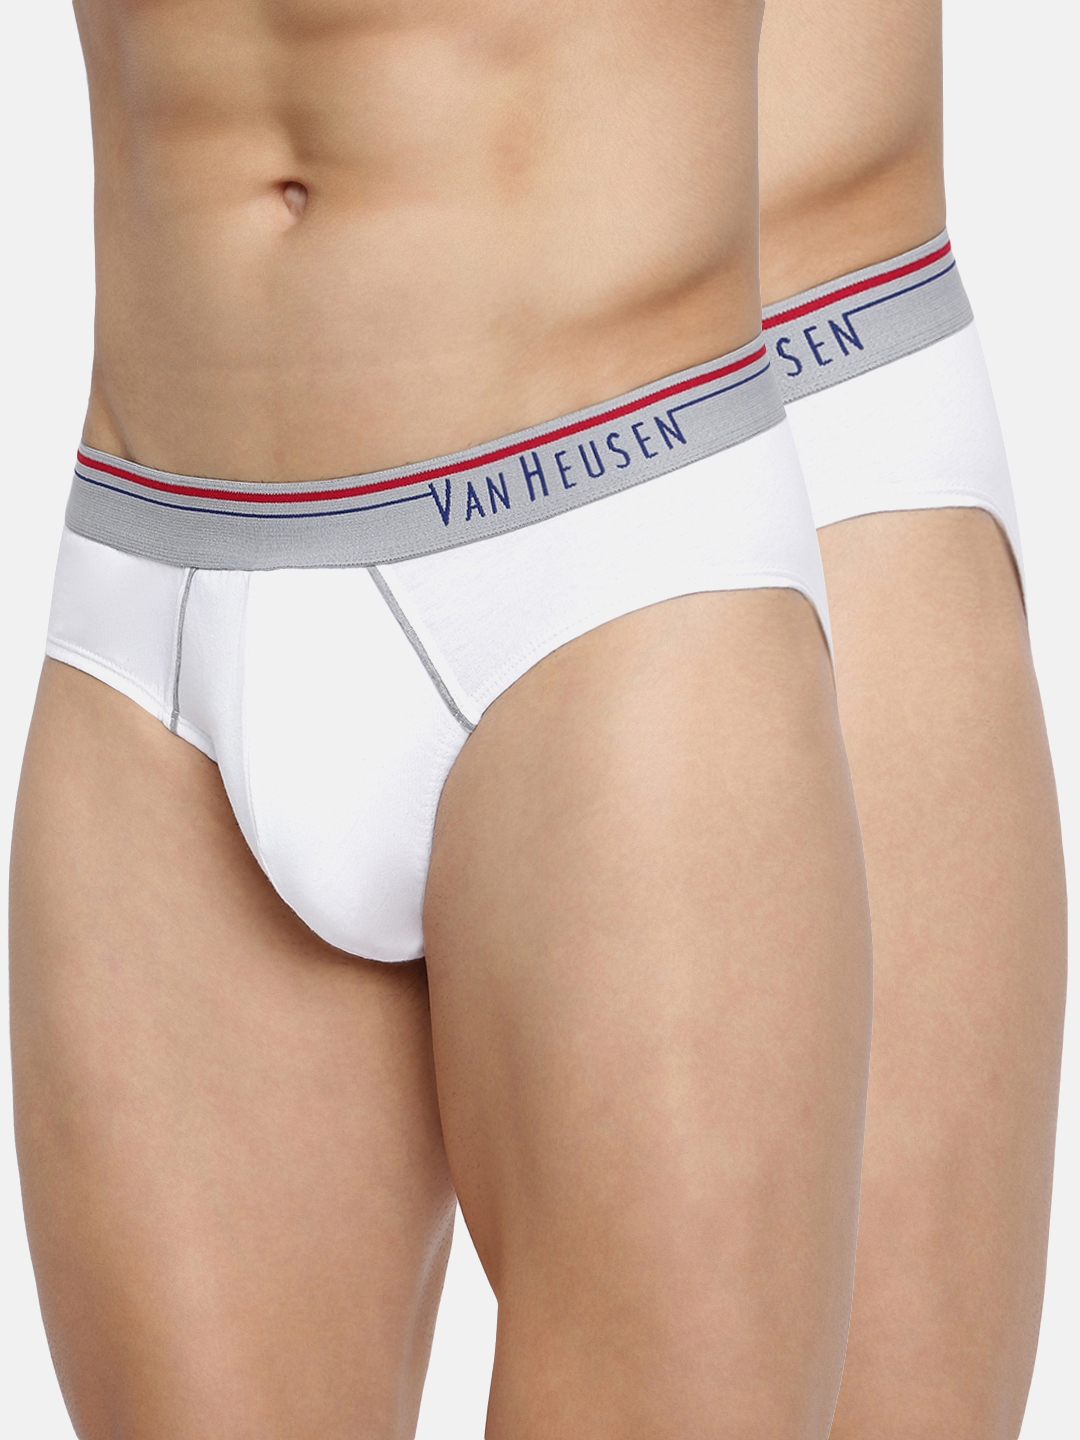 Van Heusen Underwear: Buy Innerwear Online & Get Upto 30% Off